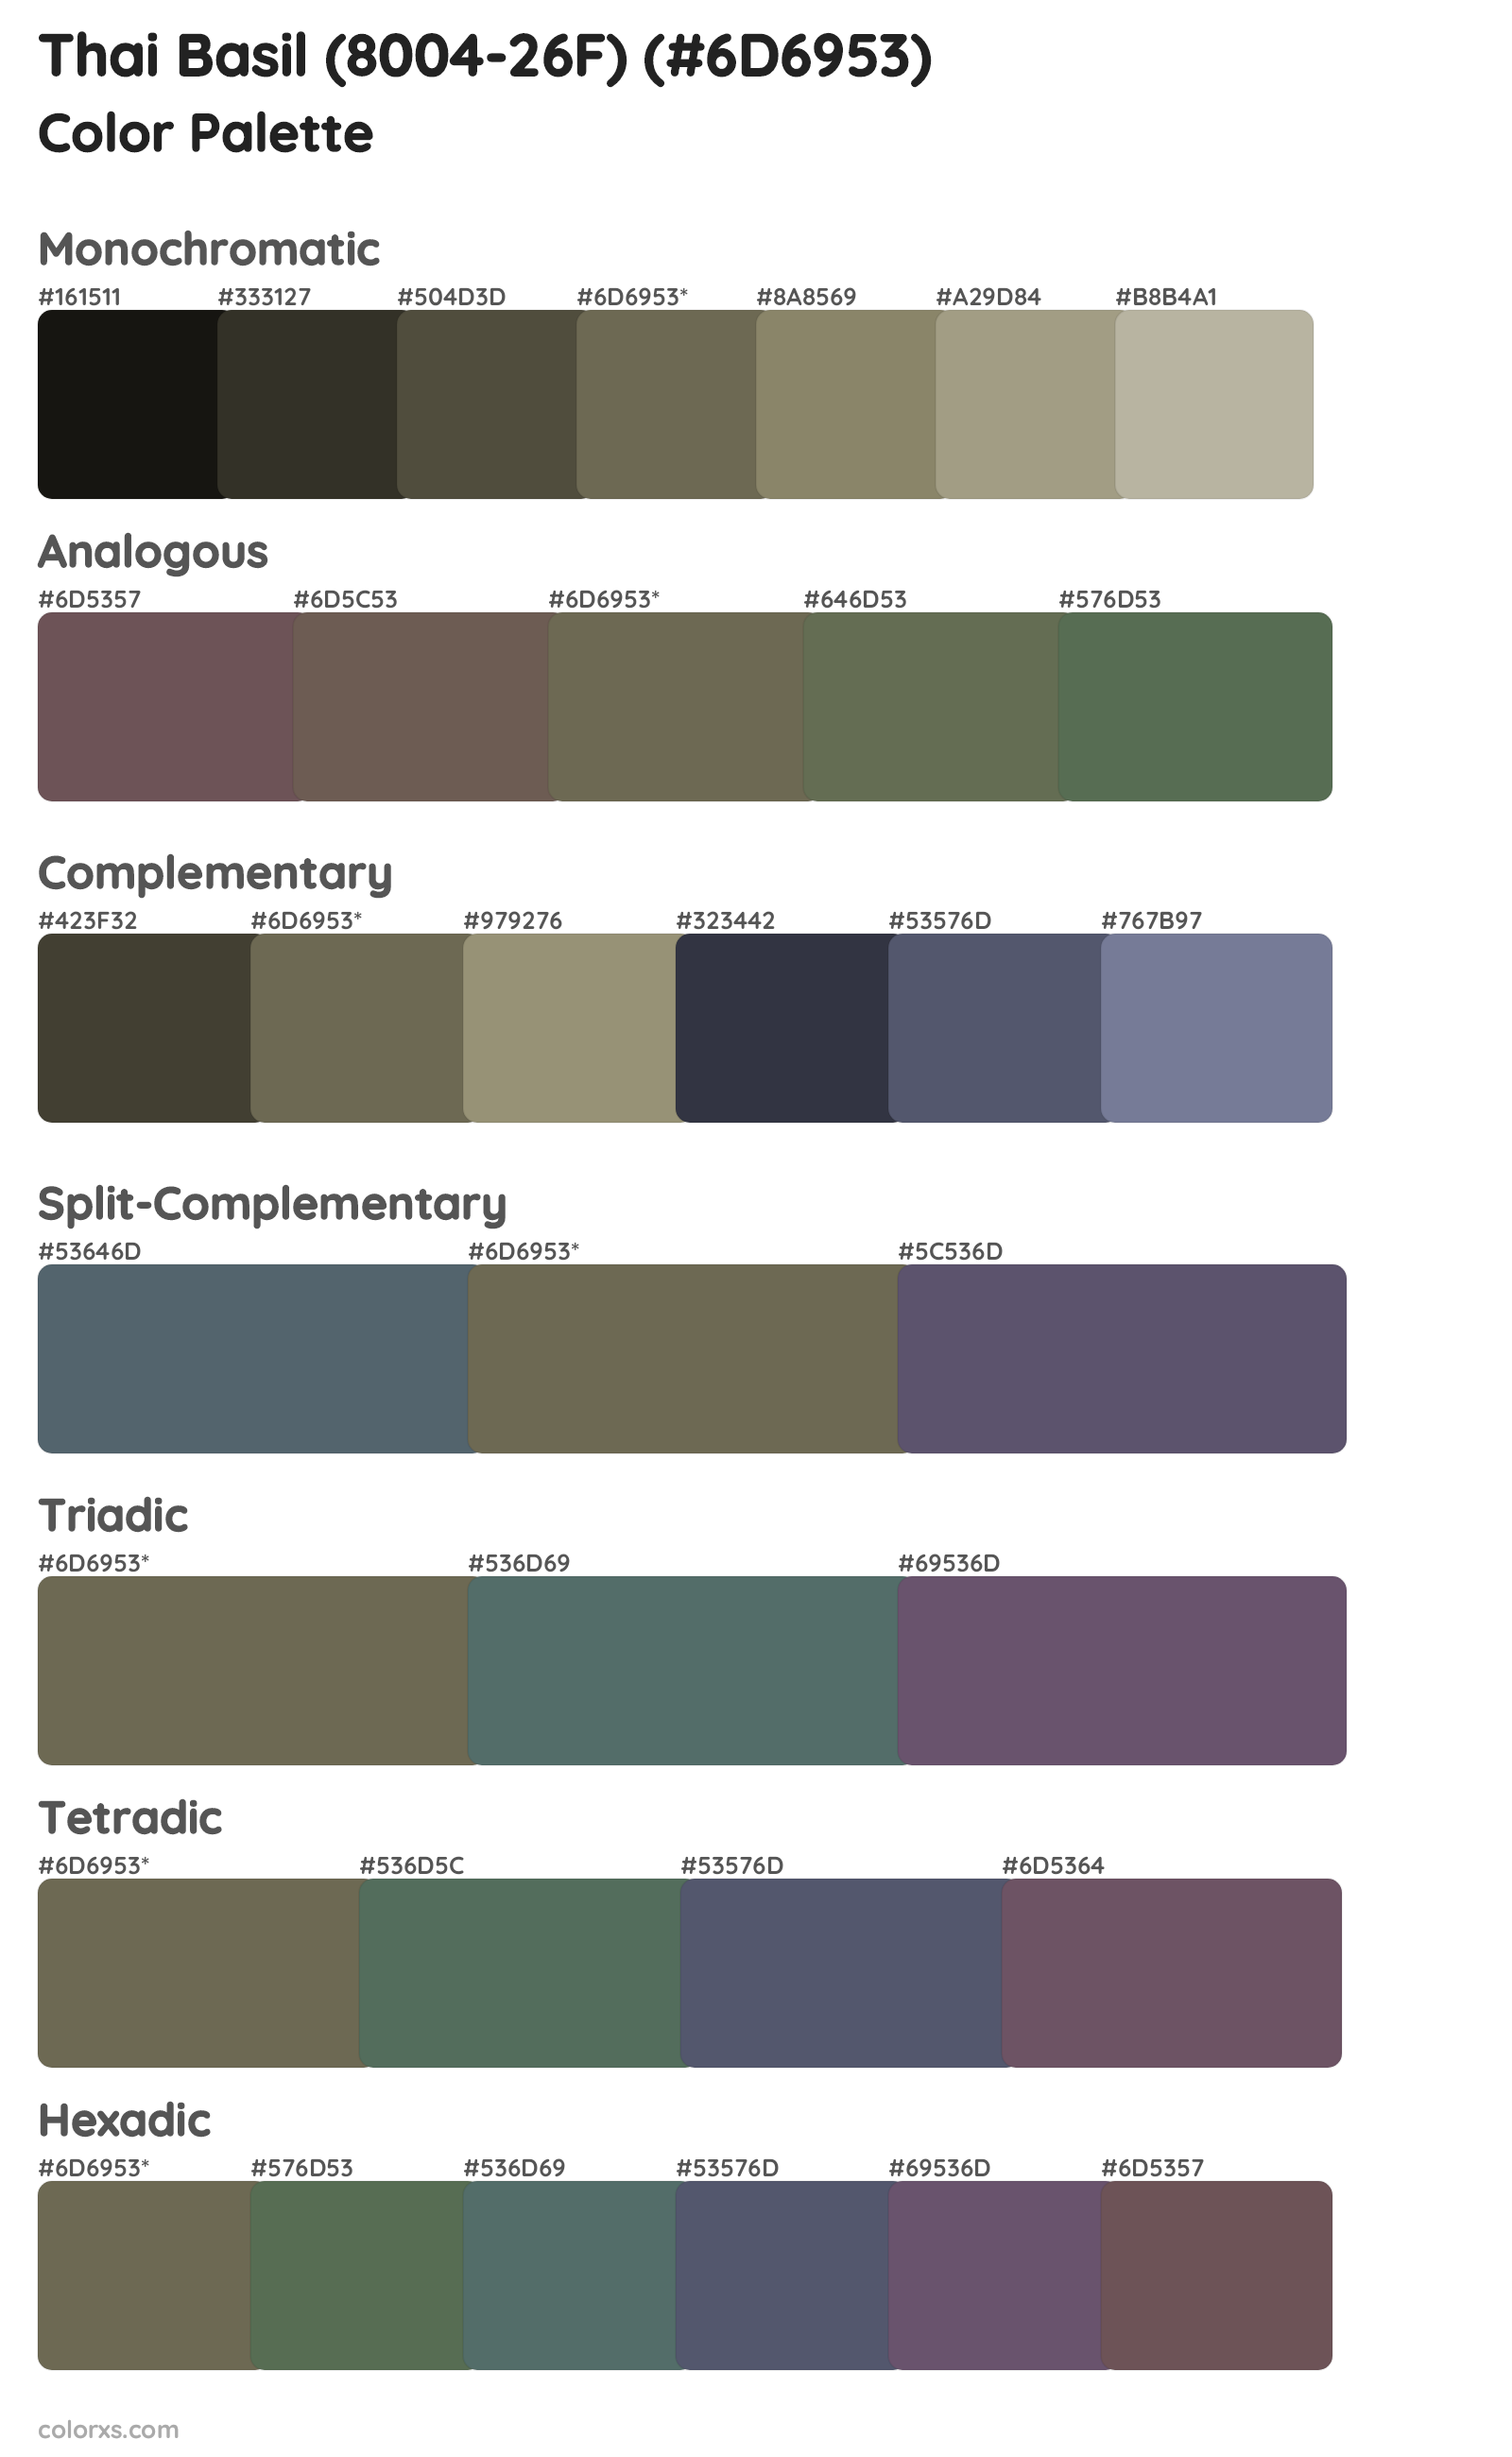 Thai Basil (8004-26F) Color Scheme Palettes